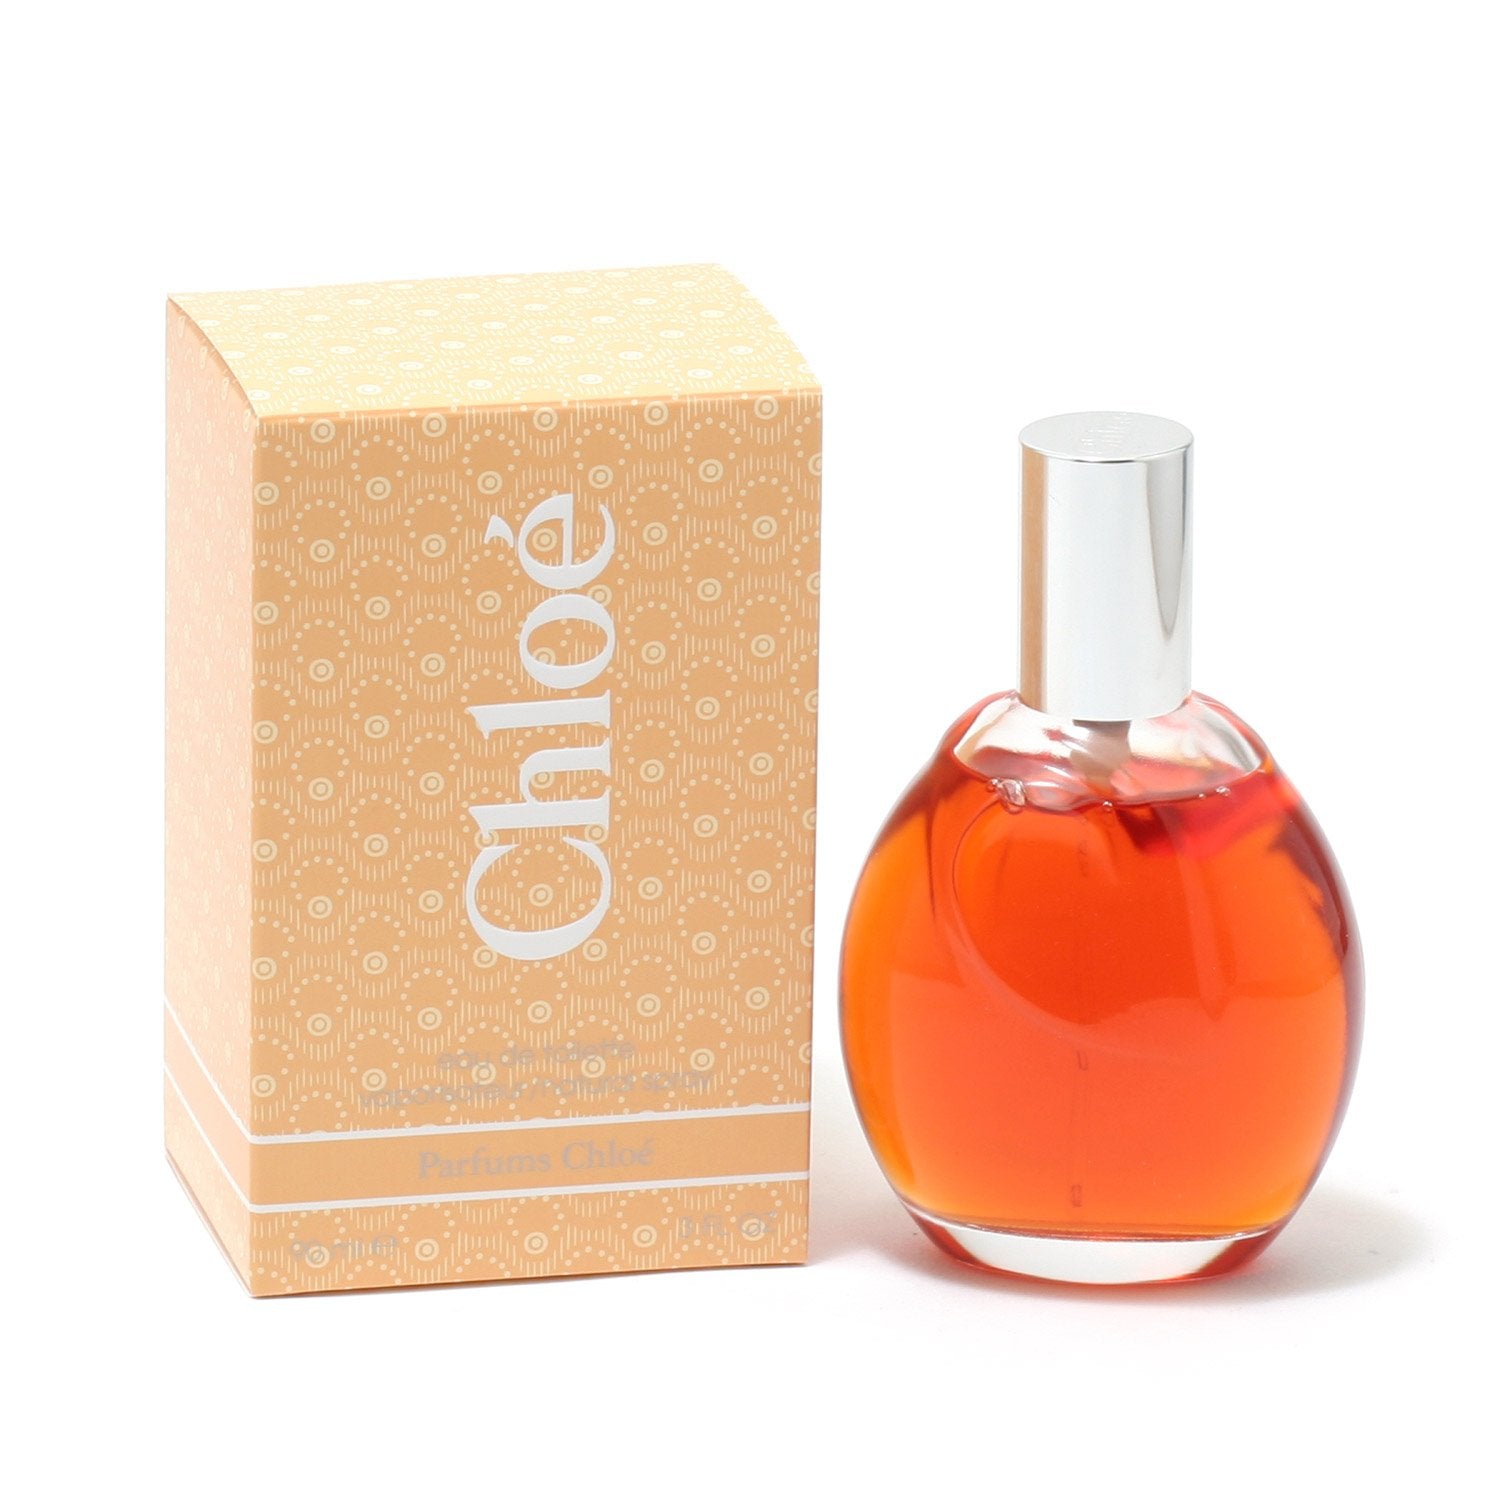 Perfume - CHLOE FOR WOMEN BY LAGERFELD - EAU DE TOILETTE SPRAY